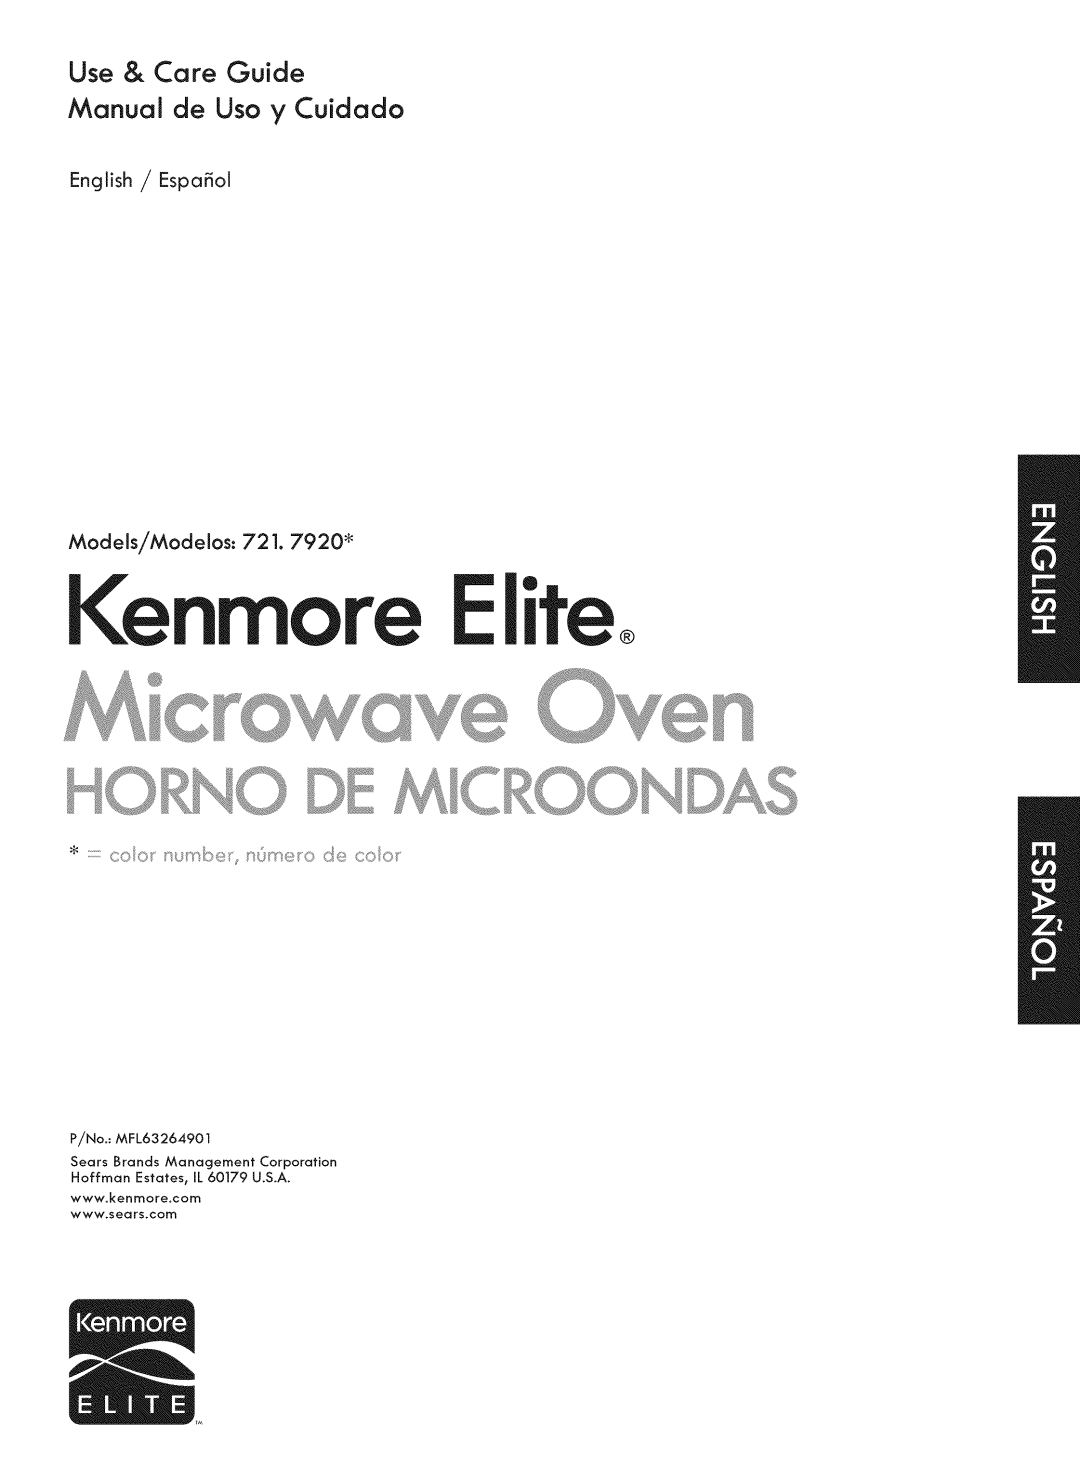 Kenmore 721. 7920 manual Use & Care Guide Manual de Uso y Cuidado, Kenmore Elite 